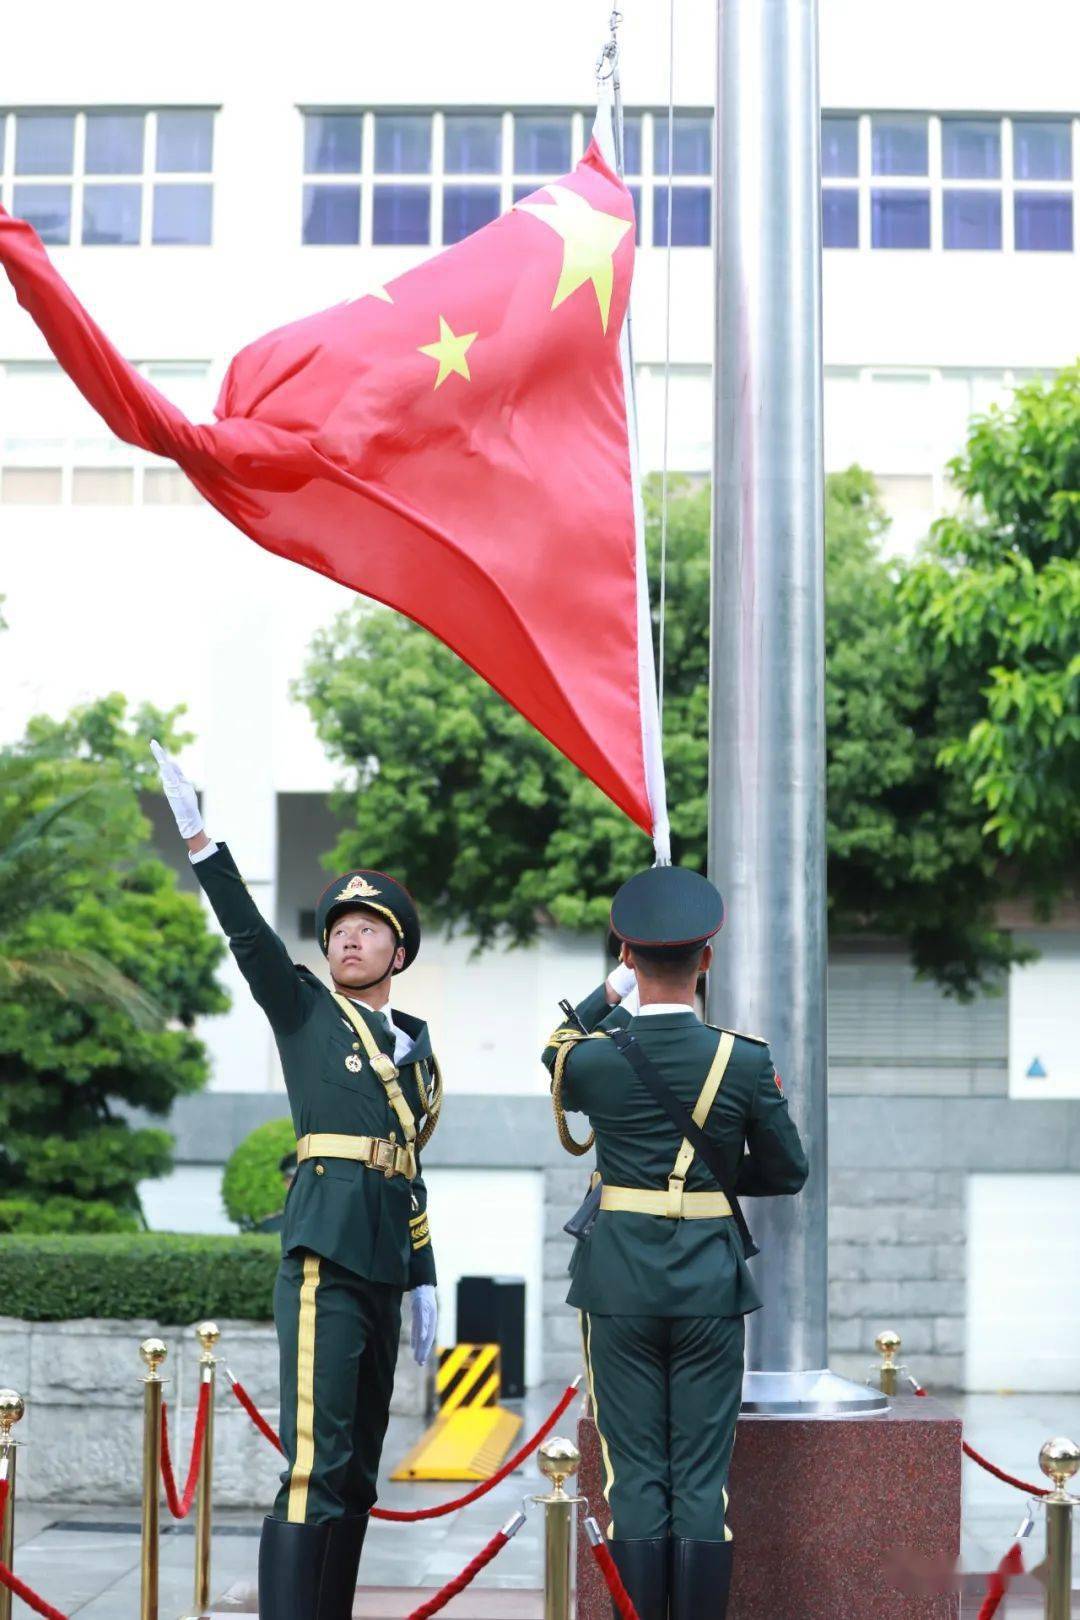 澳门,珠海营区同步组织升国旗仪式,热烈庆祝中国人民解放军建军93周年